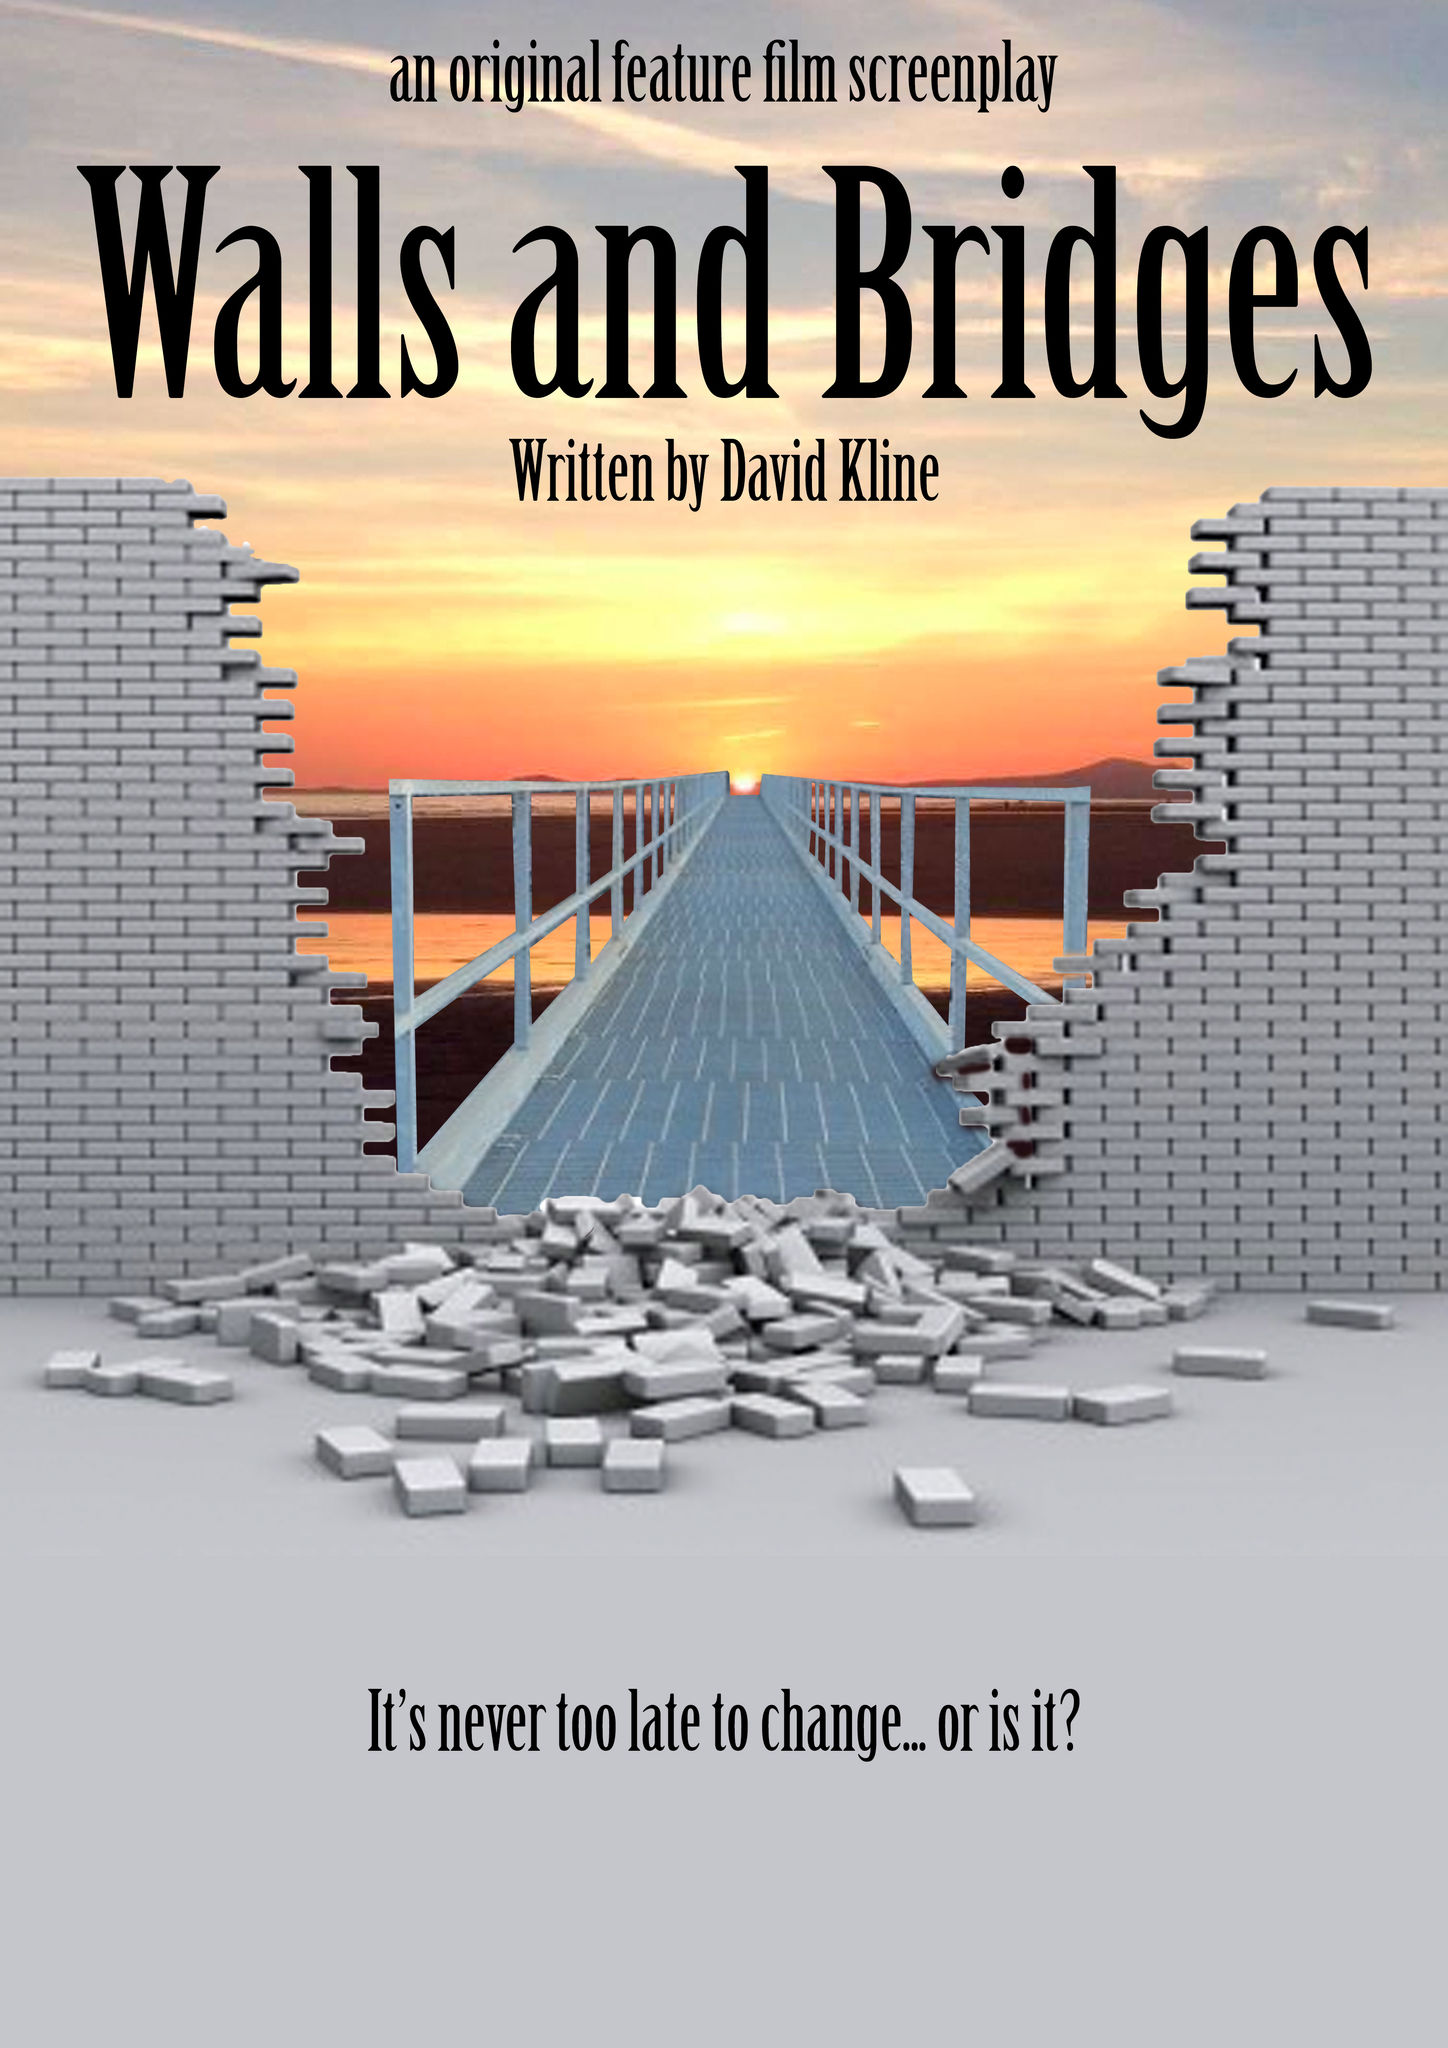 WALLS AND BRIDGES